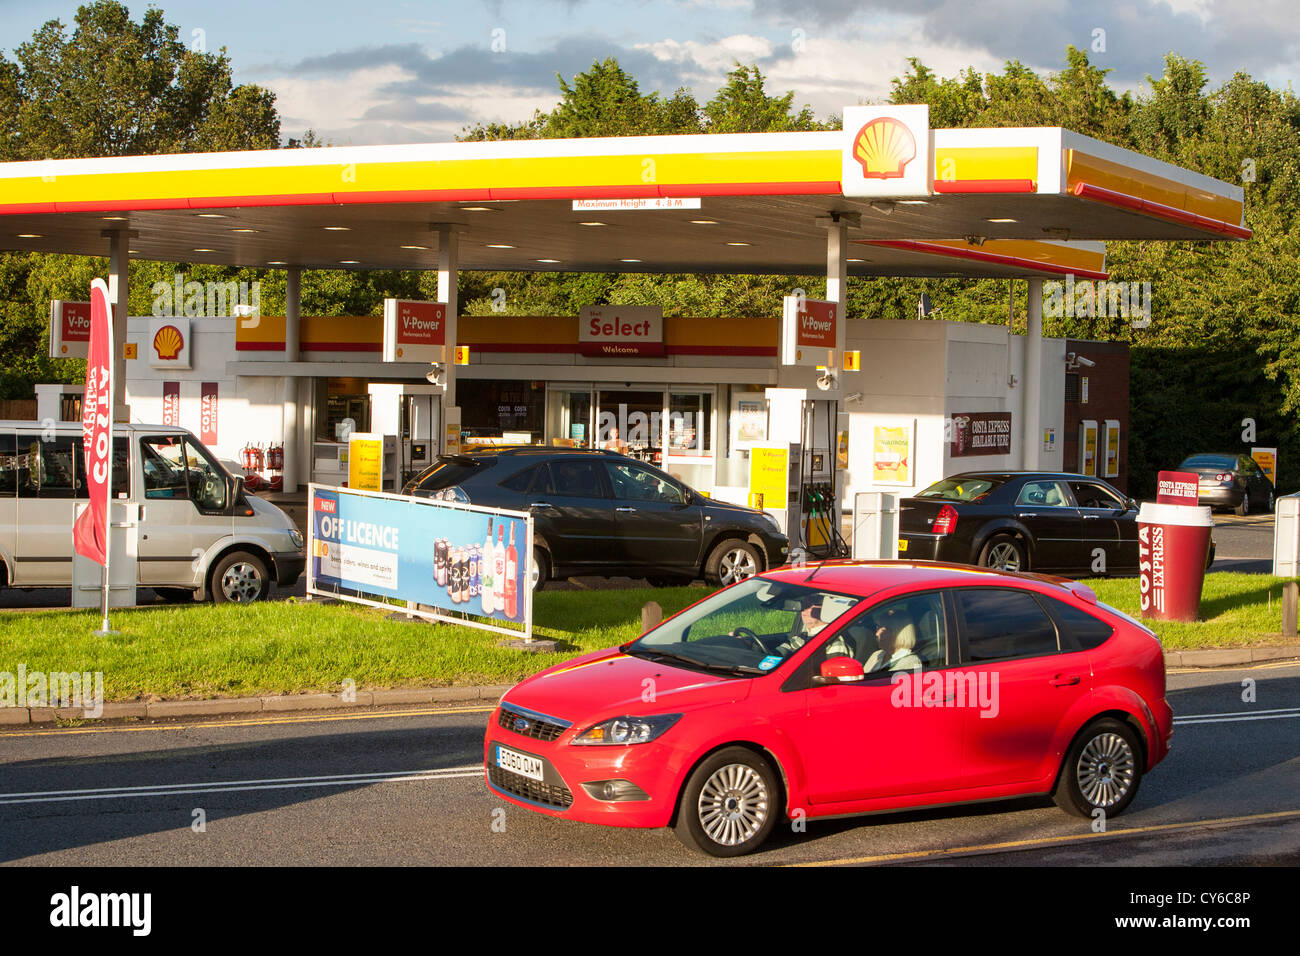 A shell petrol station at Gatwick Airport, London, UK. Stock Photo